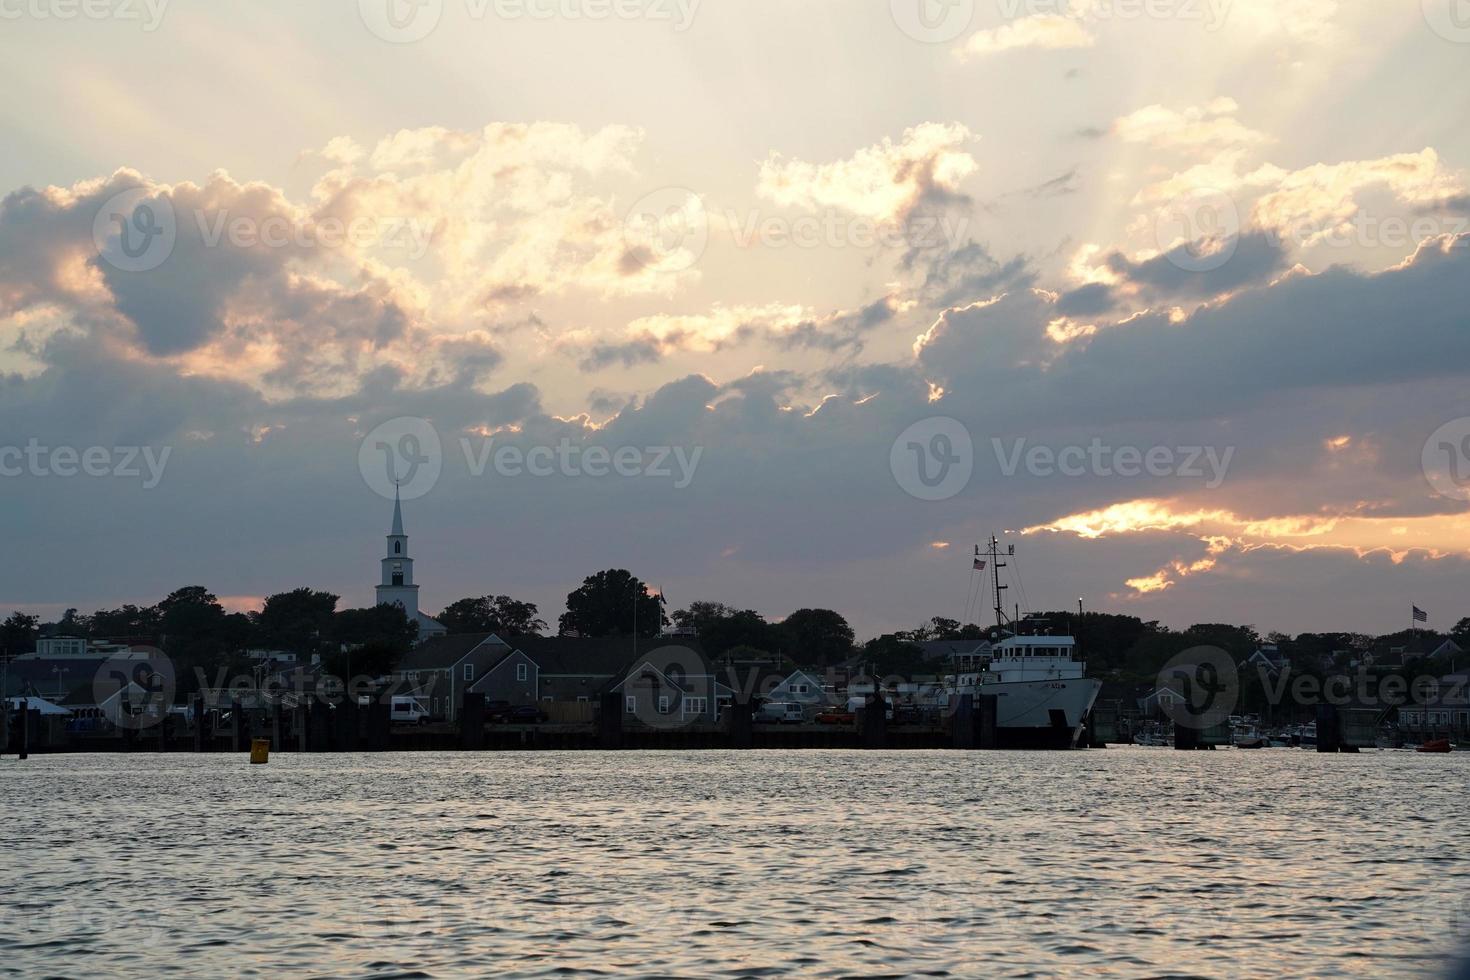 vista do porto de nantucket ao pôr do sol foto